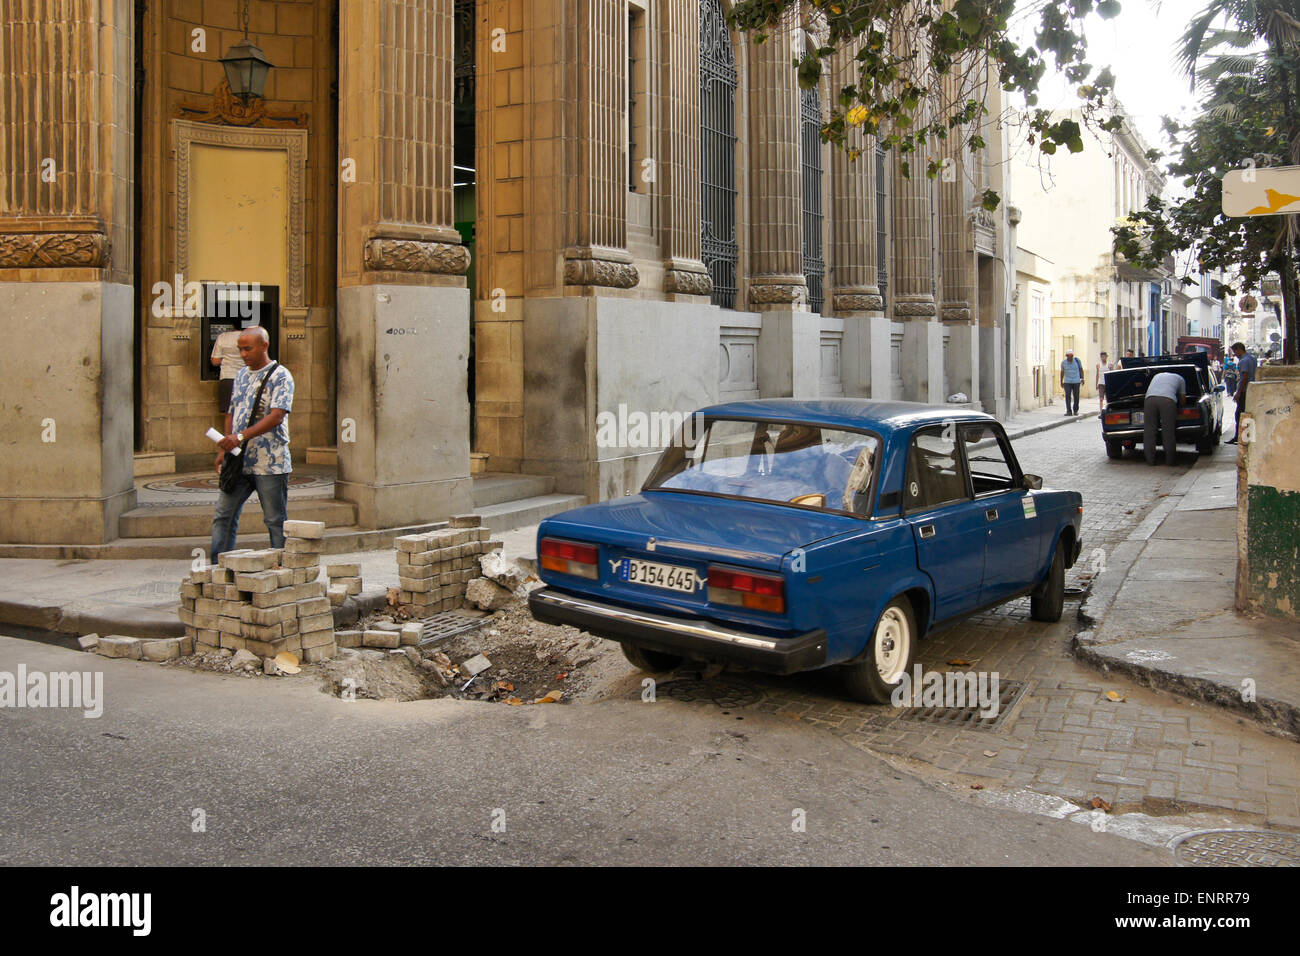 Old Russian car (Lada) negotiating potholed street, Habana Vieja (Old Havana), Cuba Stock Photo